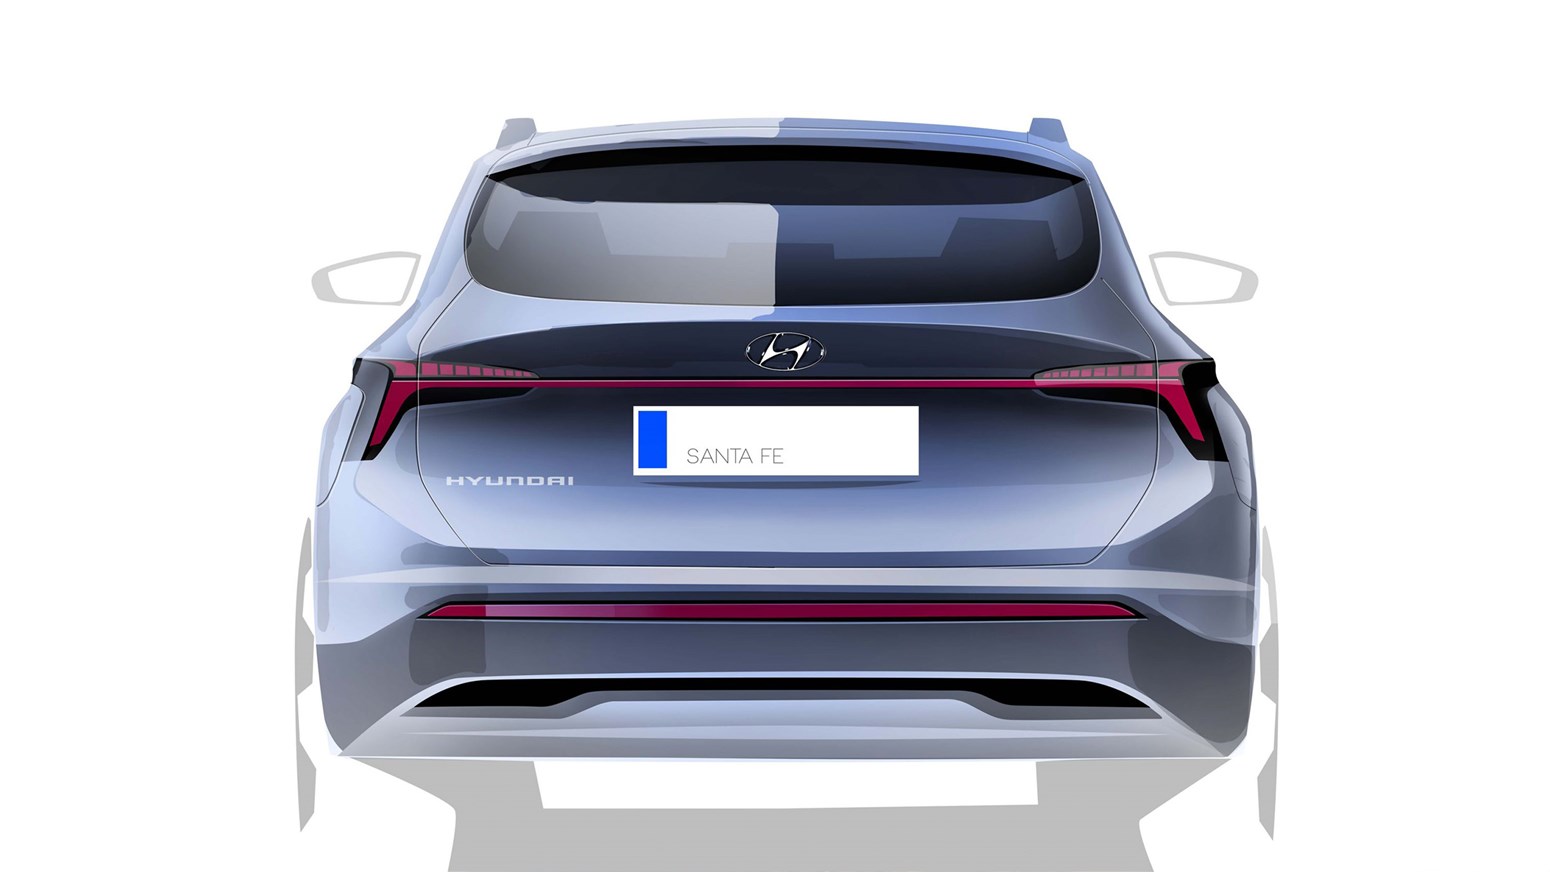 Bildgalleri - en sketch på baksidan av Hyundai SANTA FE.